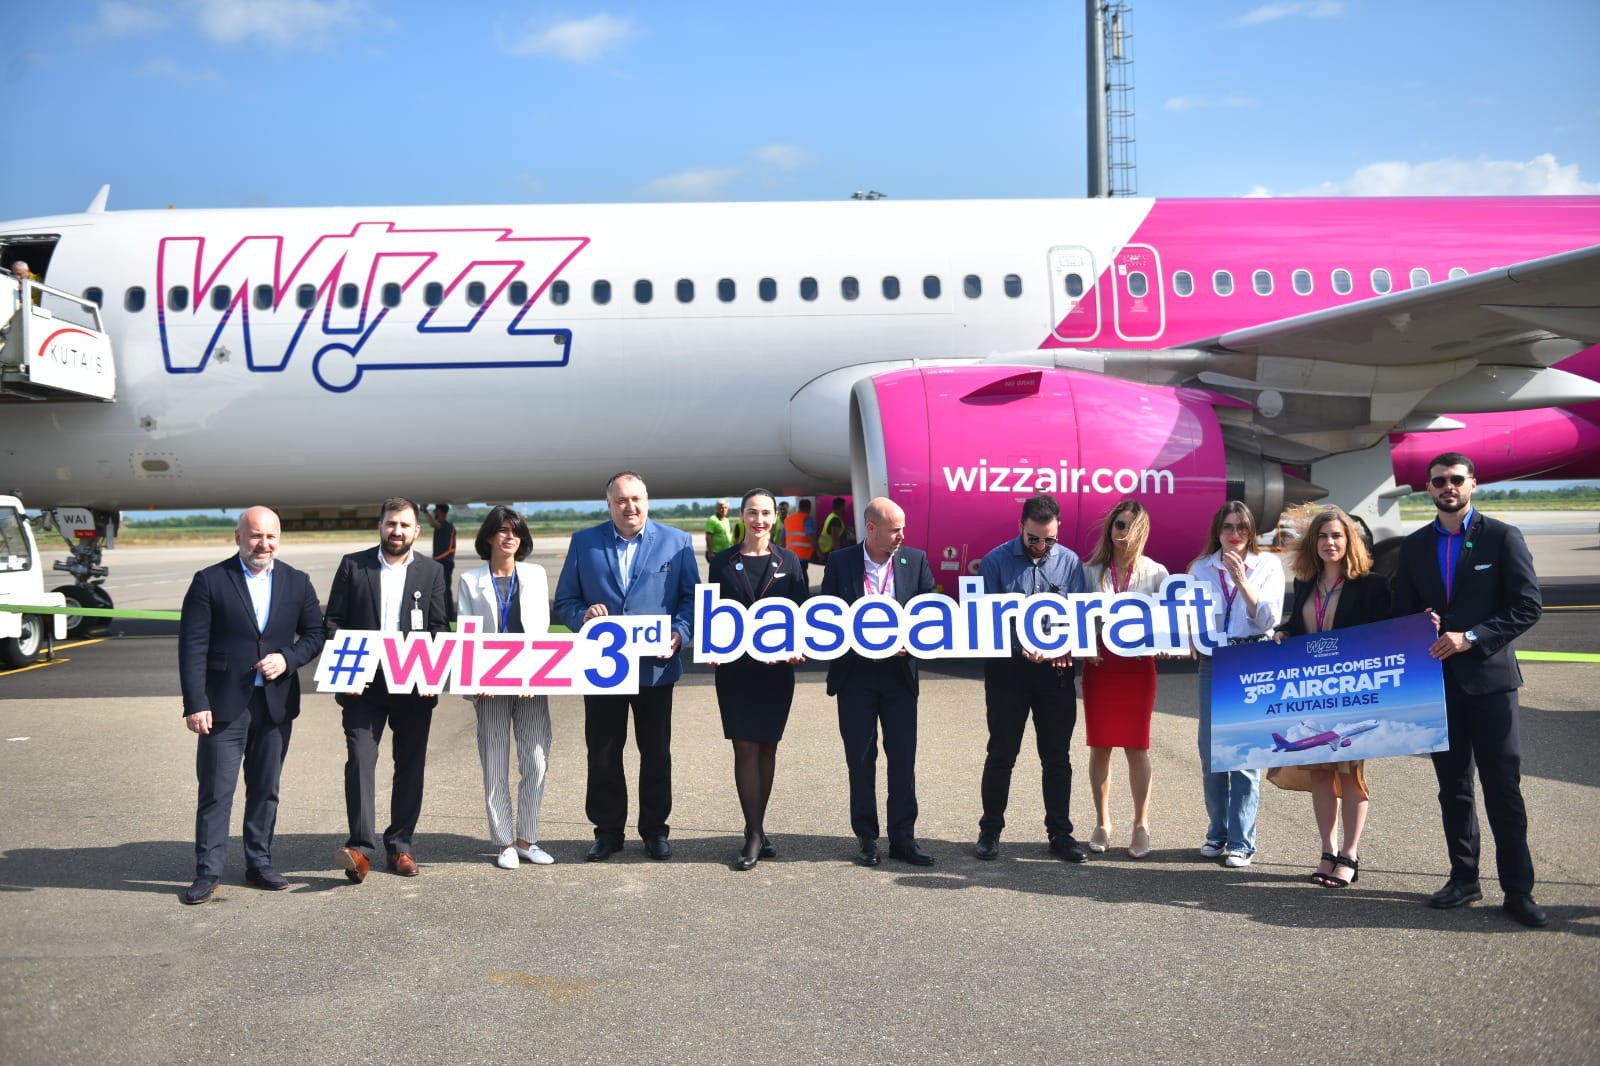 ქუთაისის საერთაშორისო აეროპორტში , 1-ლი ივნისიდან, ევროპის ყველაზე სწრაფად მზარდი ავიაკომპანია WIZZ AIR  მესამე ბაზირებულ ხომალდს აბრუნებს და პირდაპირი რეგულარული რეისების შესრულებას ევროპის 5 ქალაქის: ბრიუსელის, მადრიდის, ფრანკფურტის, ჰამბურგისა და პოზნანის  მიმართულებით იწყებს.